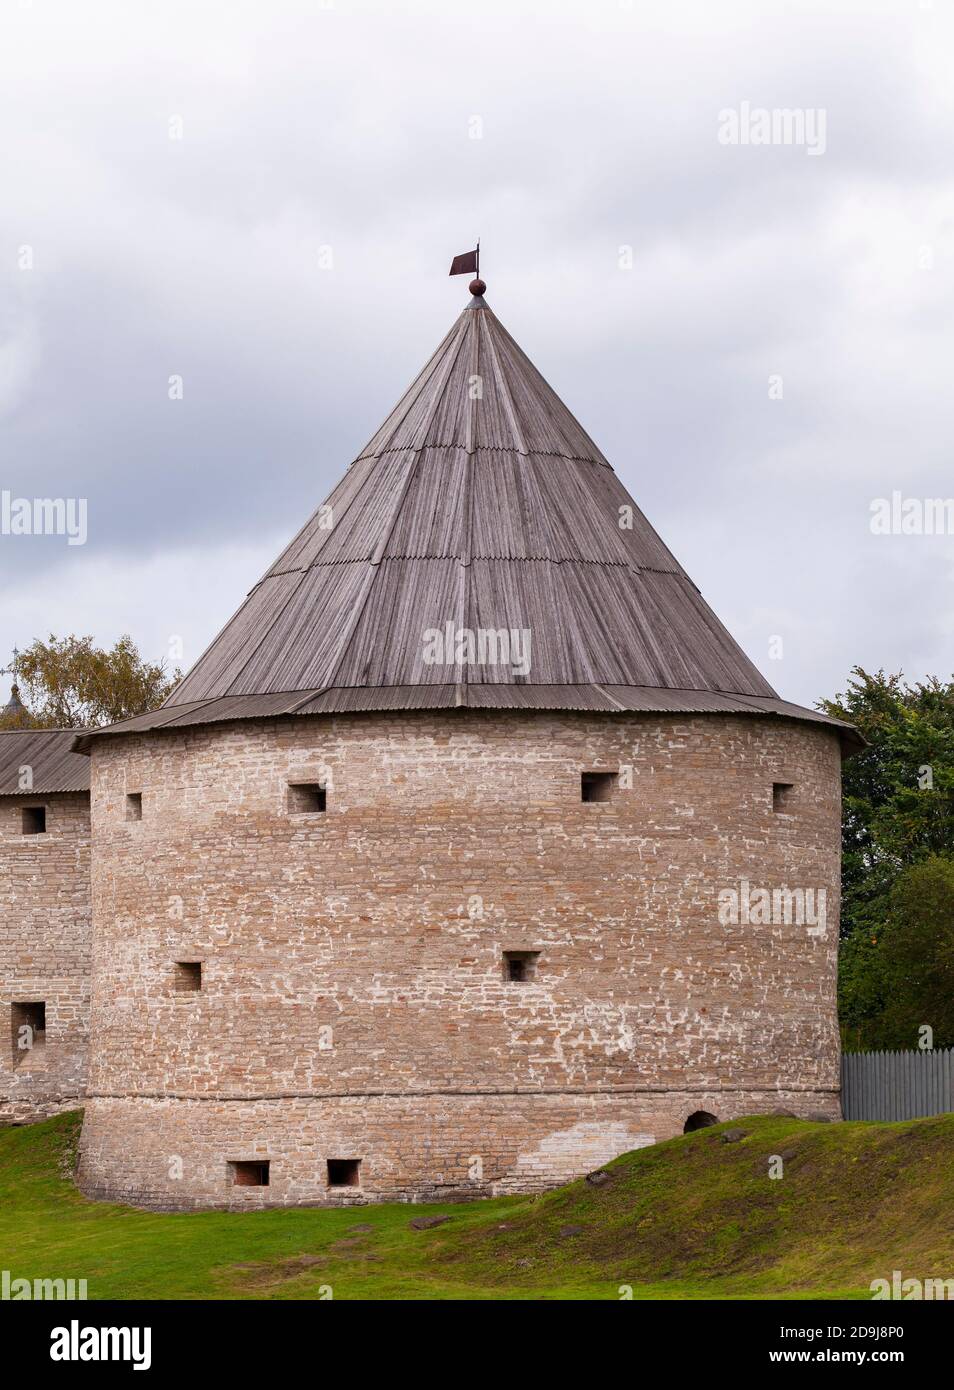 Die Festung von Ladoga. Es wurde im 12. Jahrhundert erbaut und 400 Jahre später wieder aufgebaut. Staraya Ladoga, Russland. Vertikales Foto Stockfoto